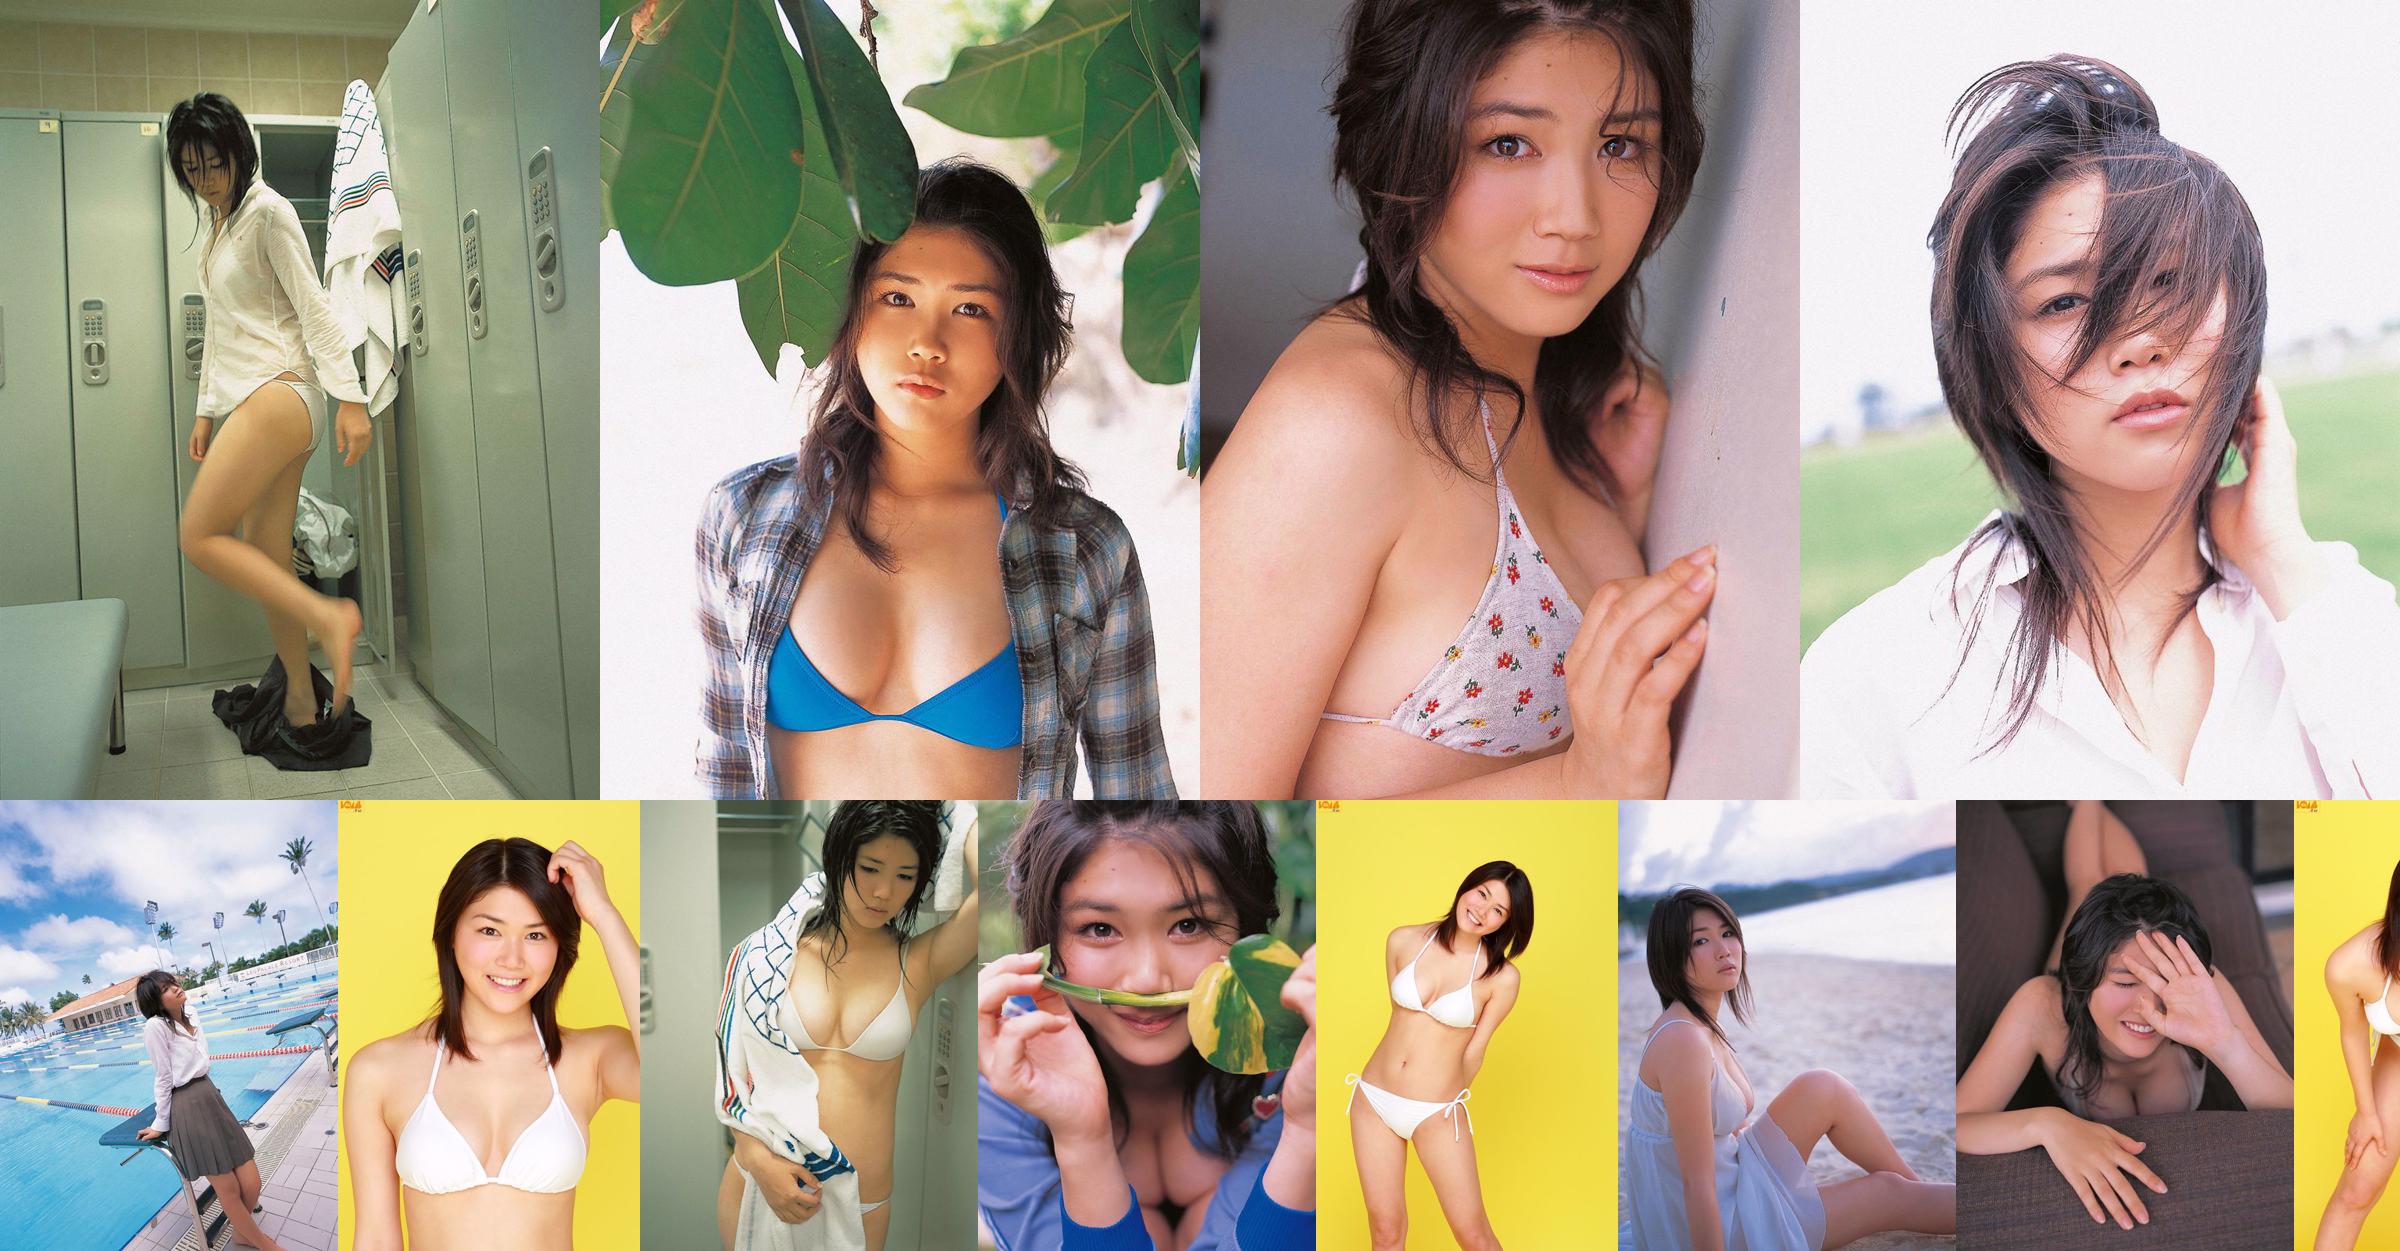 [Bomb.TV] Август 2006 года выпуска Mami Nagaoka Mami Nagaoka / Mami Nagaoka No.a4d40a Страница 8